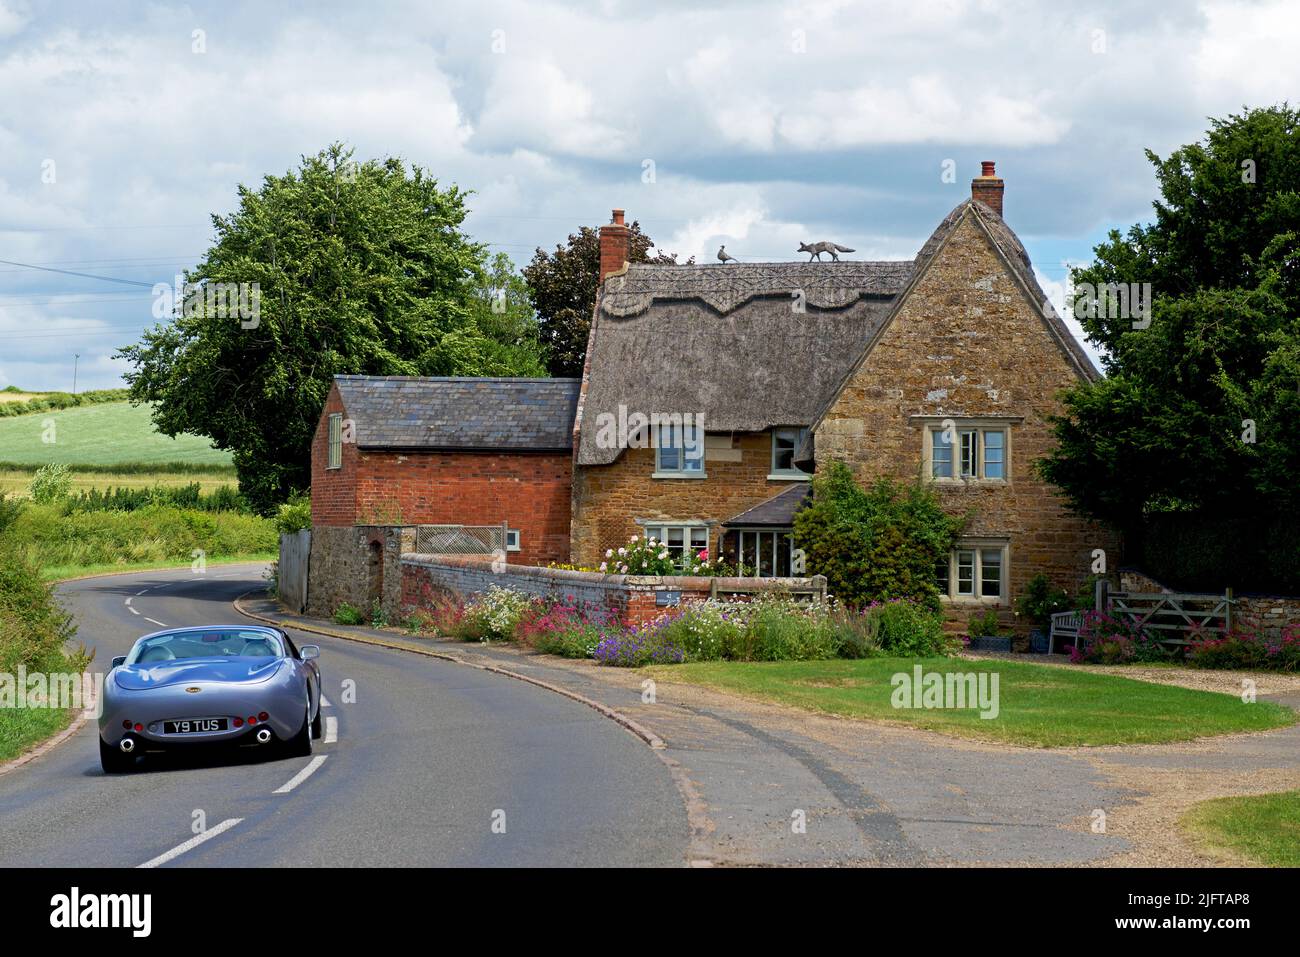 TVR voiture de sport toscane approchant d'un chalet de chaume dans le village de Sutton Bassett, Northamptonshire, Angleterre Royaume-Uni Banque D'Images